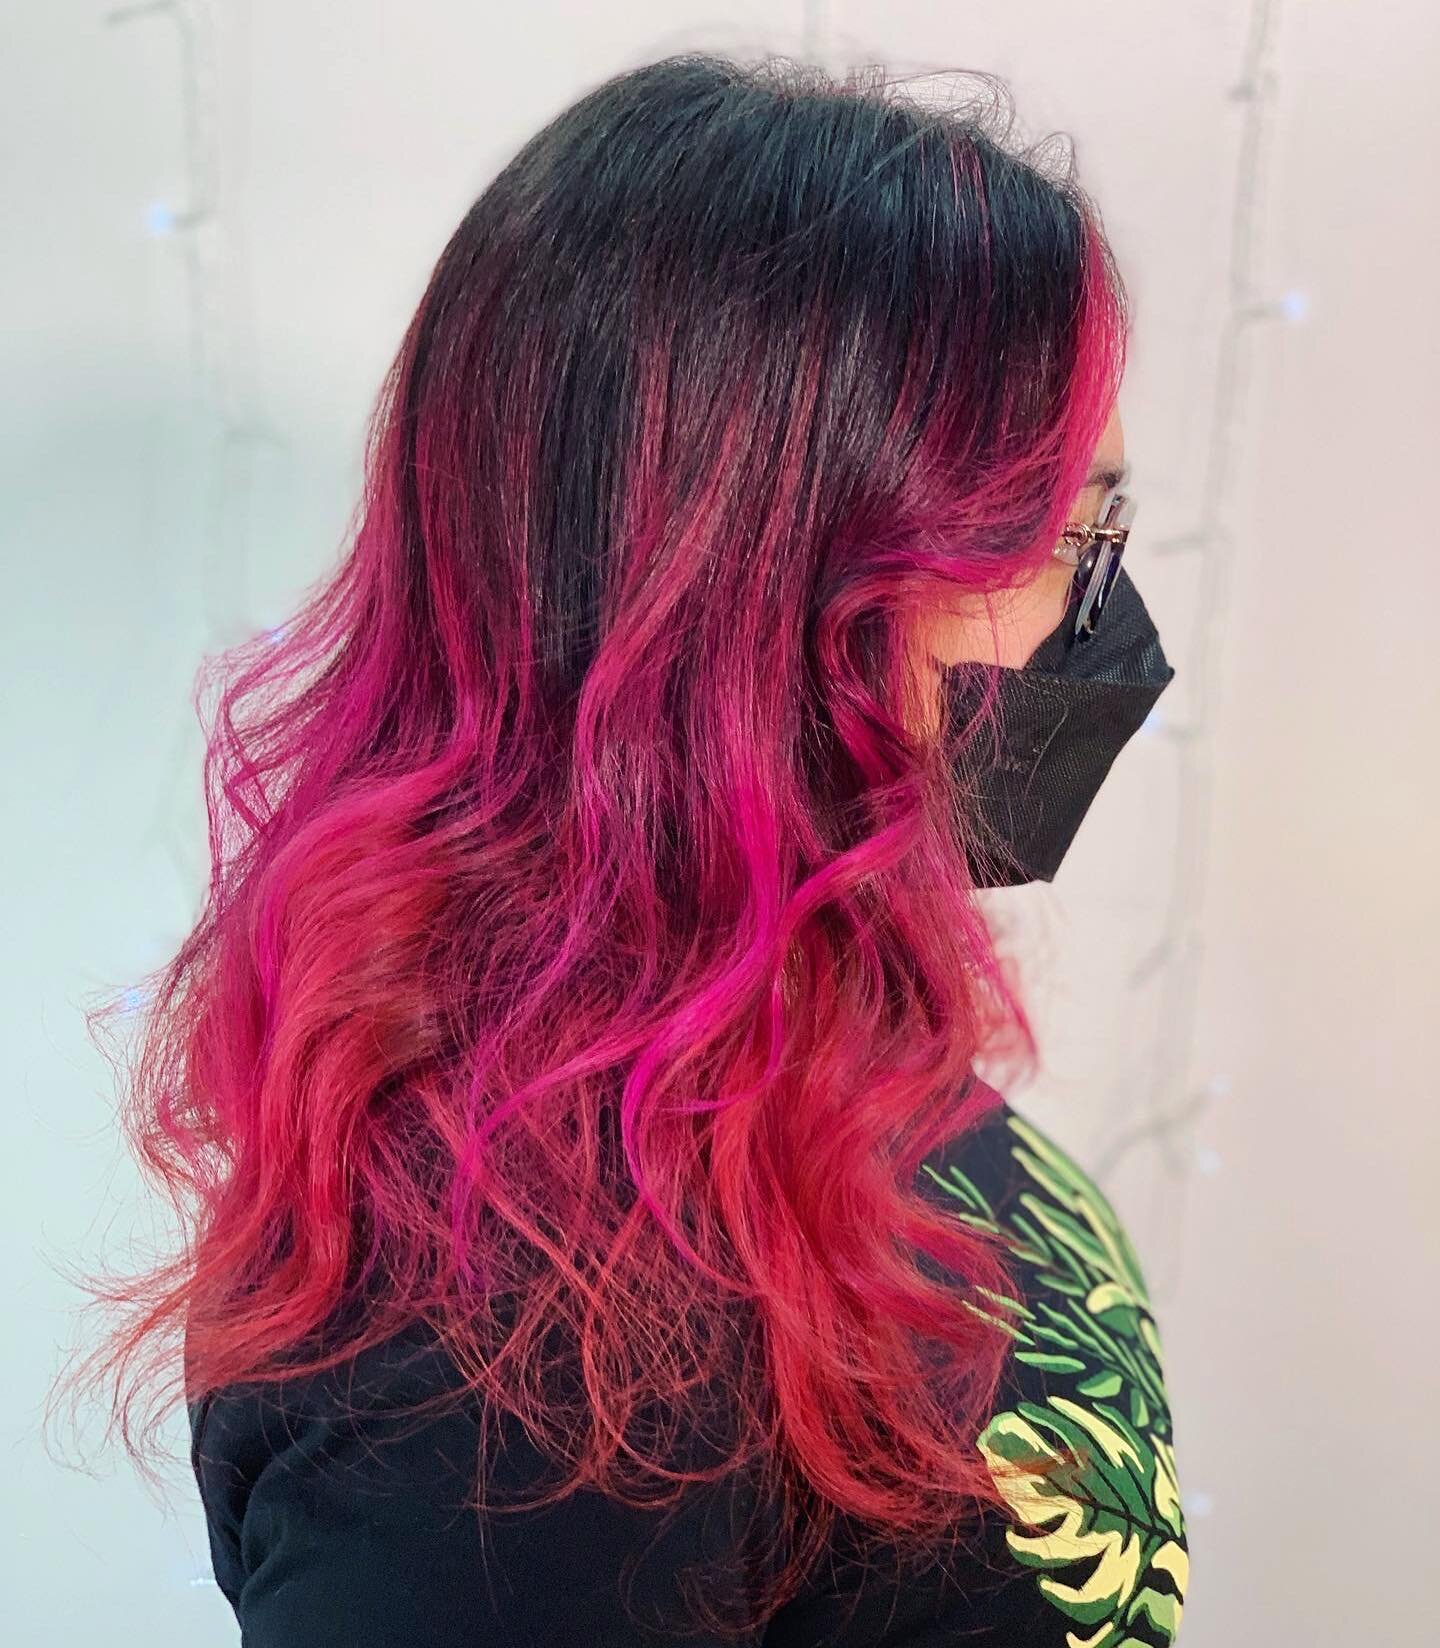 Dragonfruit 💕🐉 

#salon #hairstylist #chapelhillhair #durhamhair #chapelhill #durham #lisencedtocreate #pulpriot #pinkhair  #pink